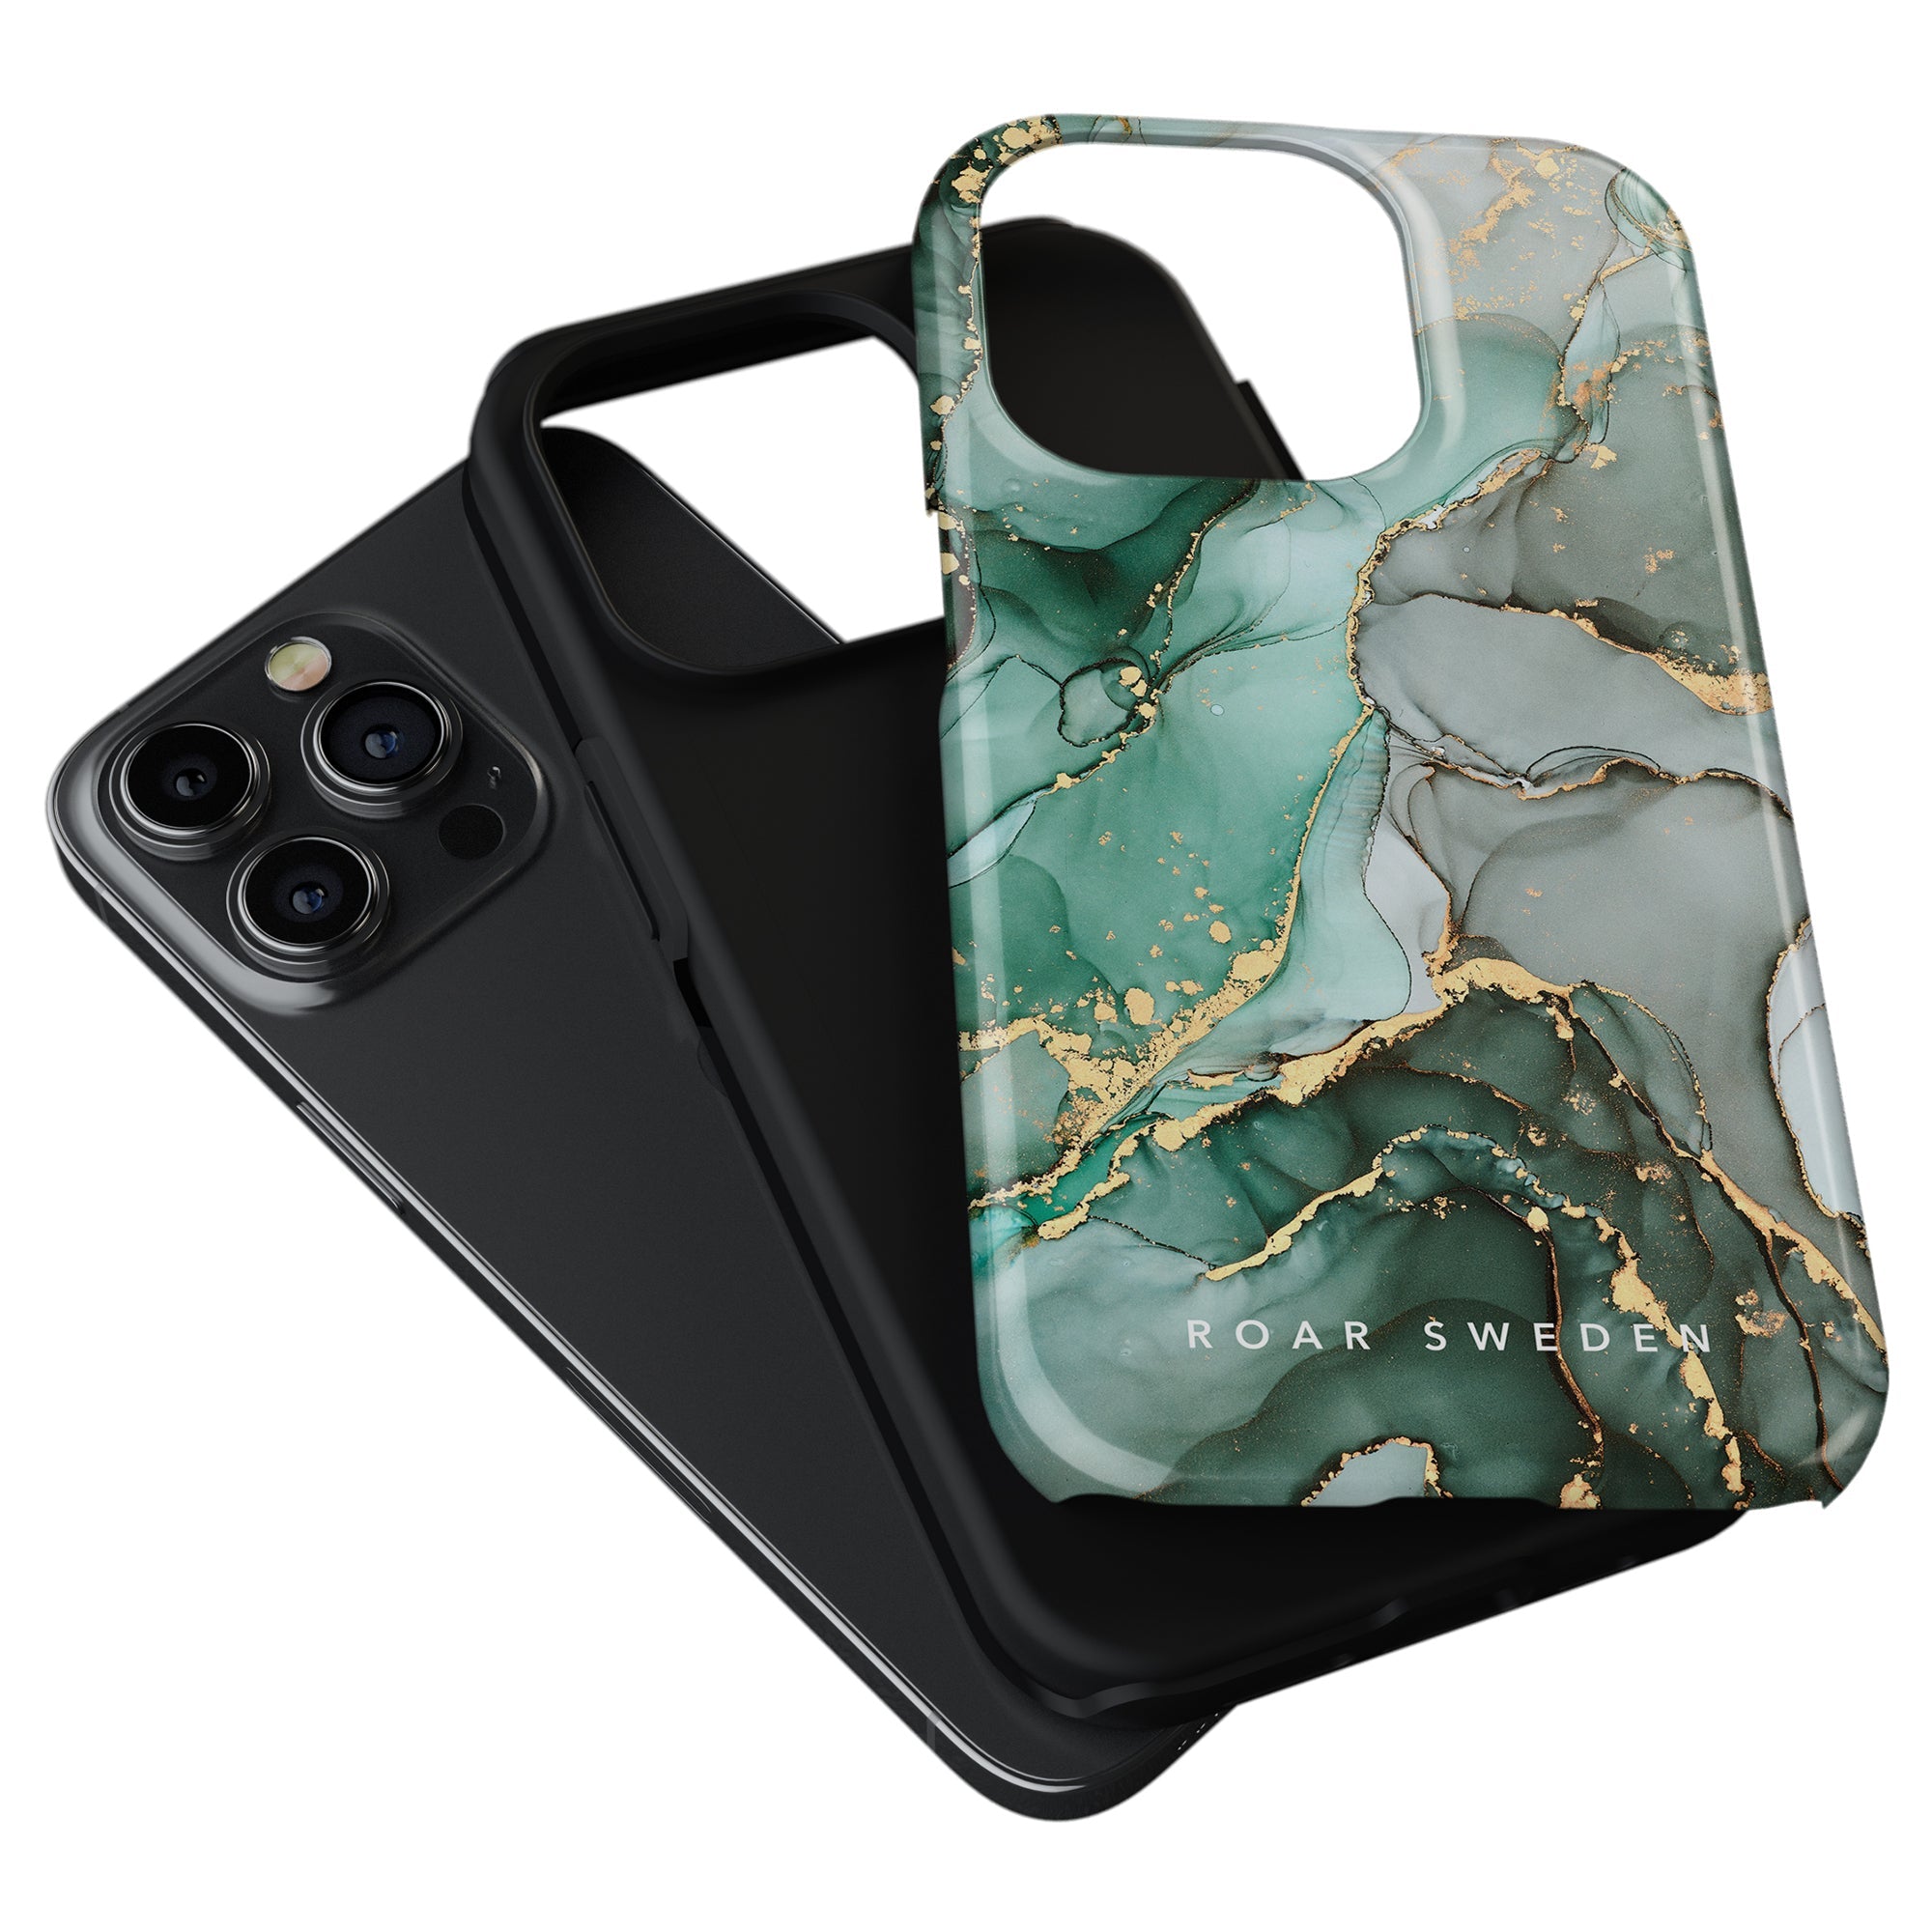 Emerald - Tough Case är ett skydd för iPhone 11 Pro som kommer i en livfull grön marmordesign. Den är designad för att ge både skydd och Lyft till din enhet.